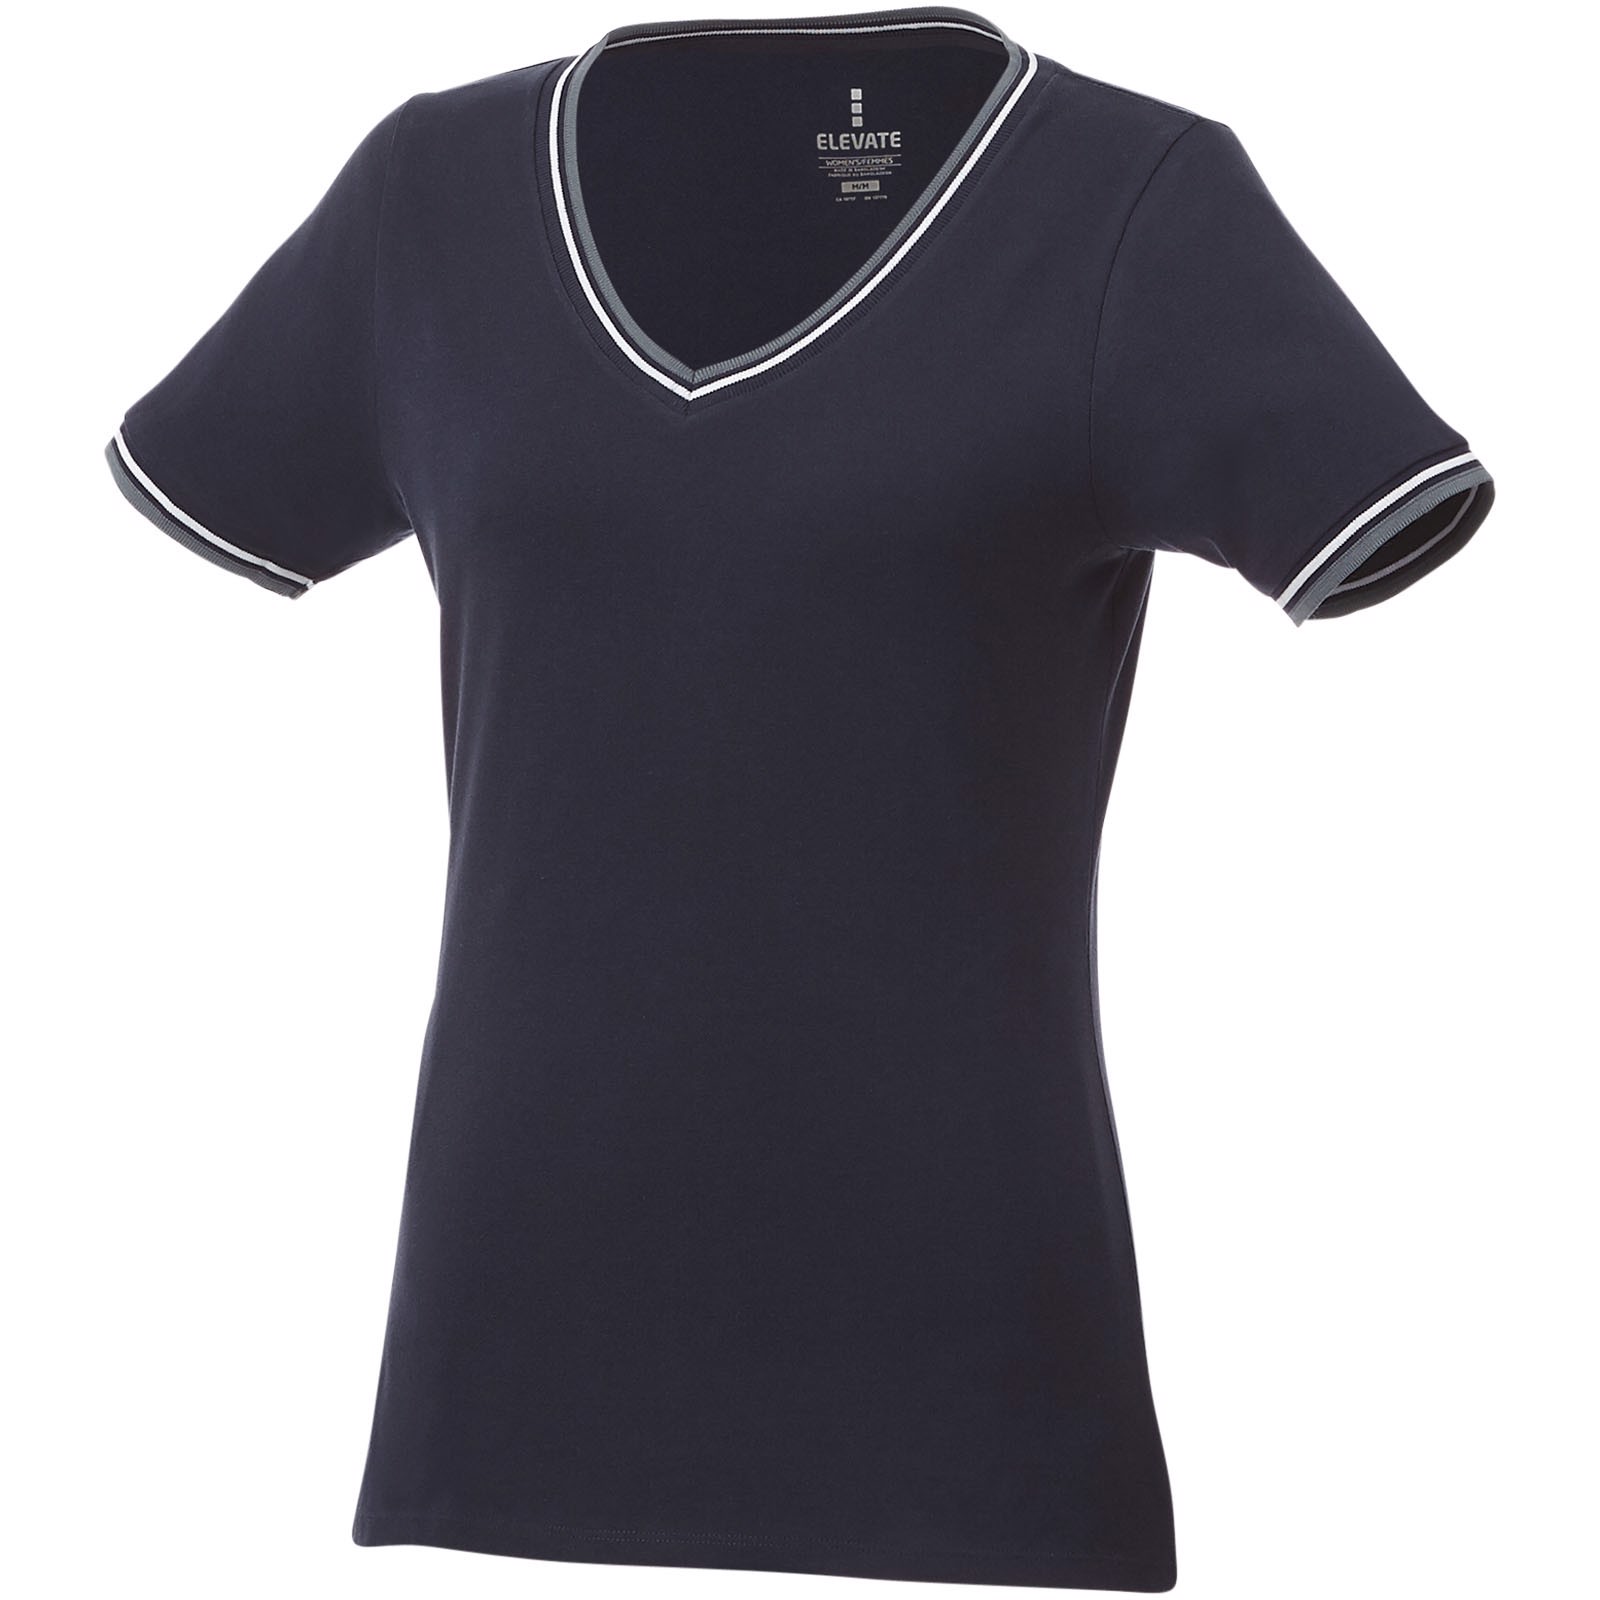 Camiseta de pico punto piqué para mujer "Elbert" - Azul Marino / Mezcla De Grises / Blanco / L